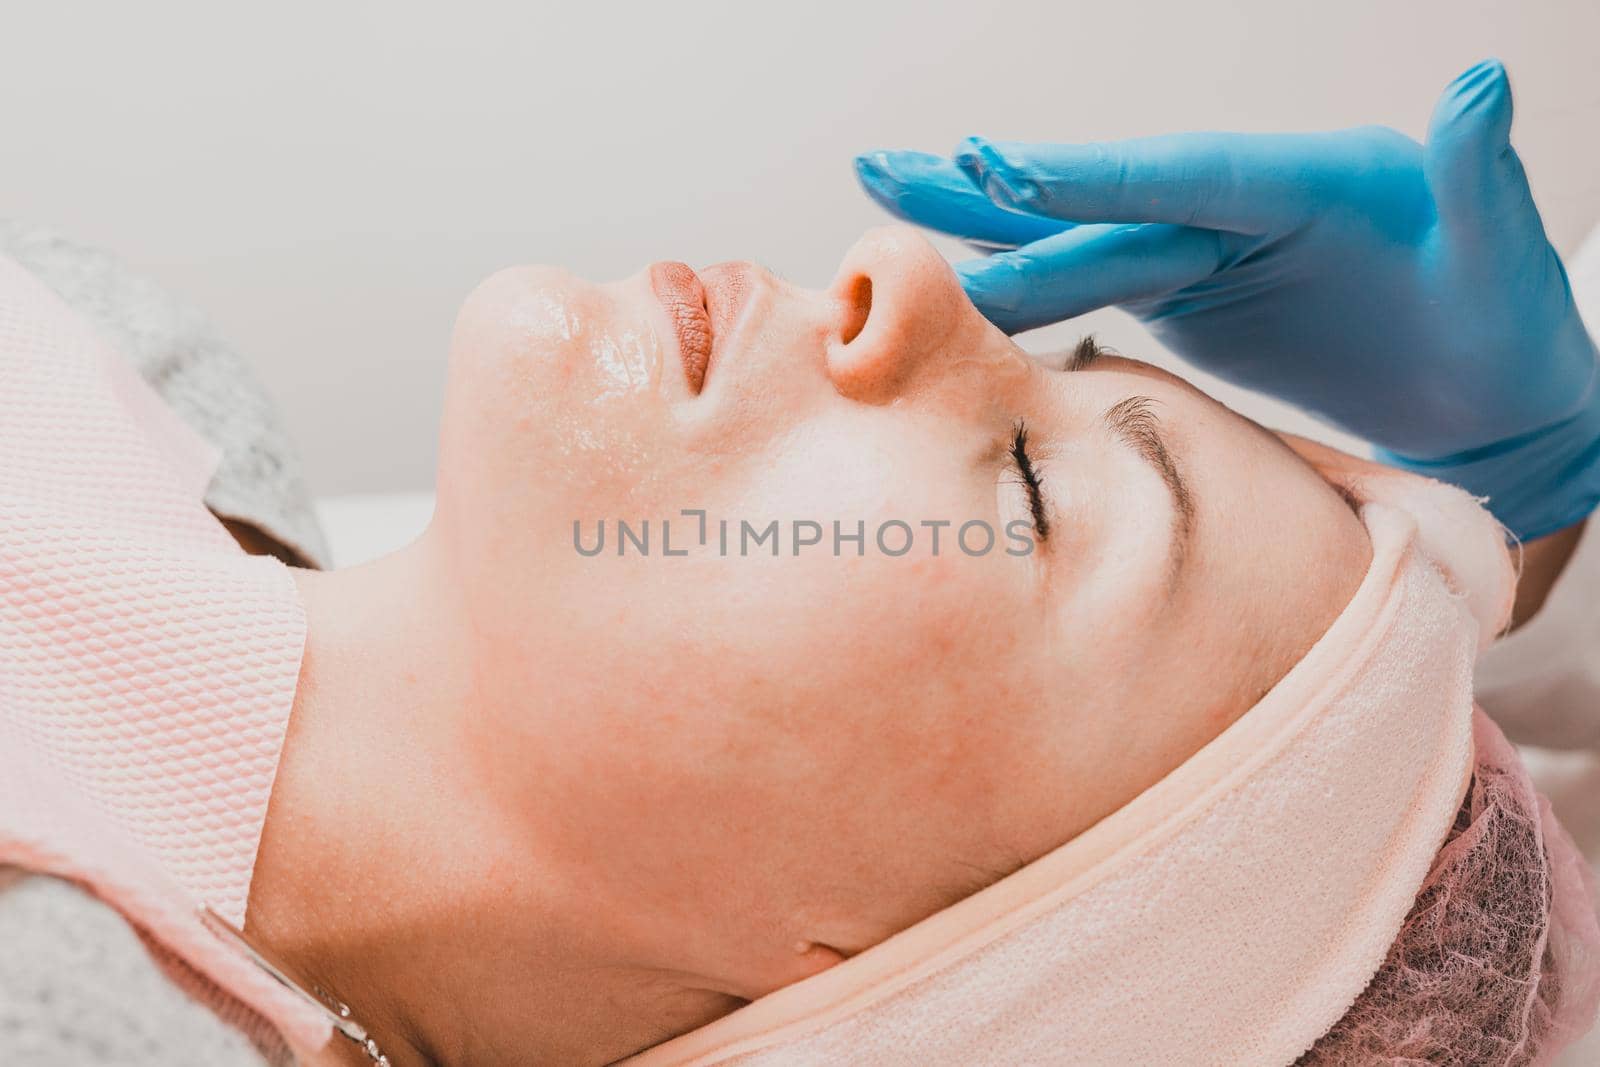 Steaming the face to open pores, applying liquid cream to open pores. by Niko_Cingaryuk